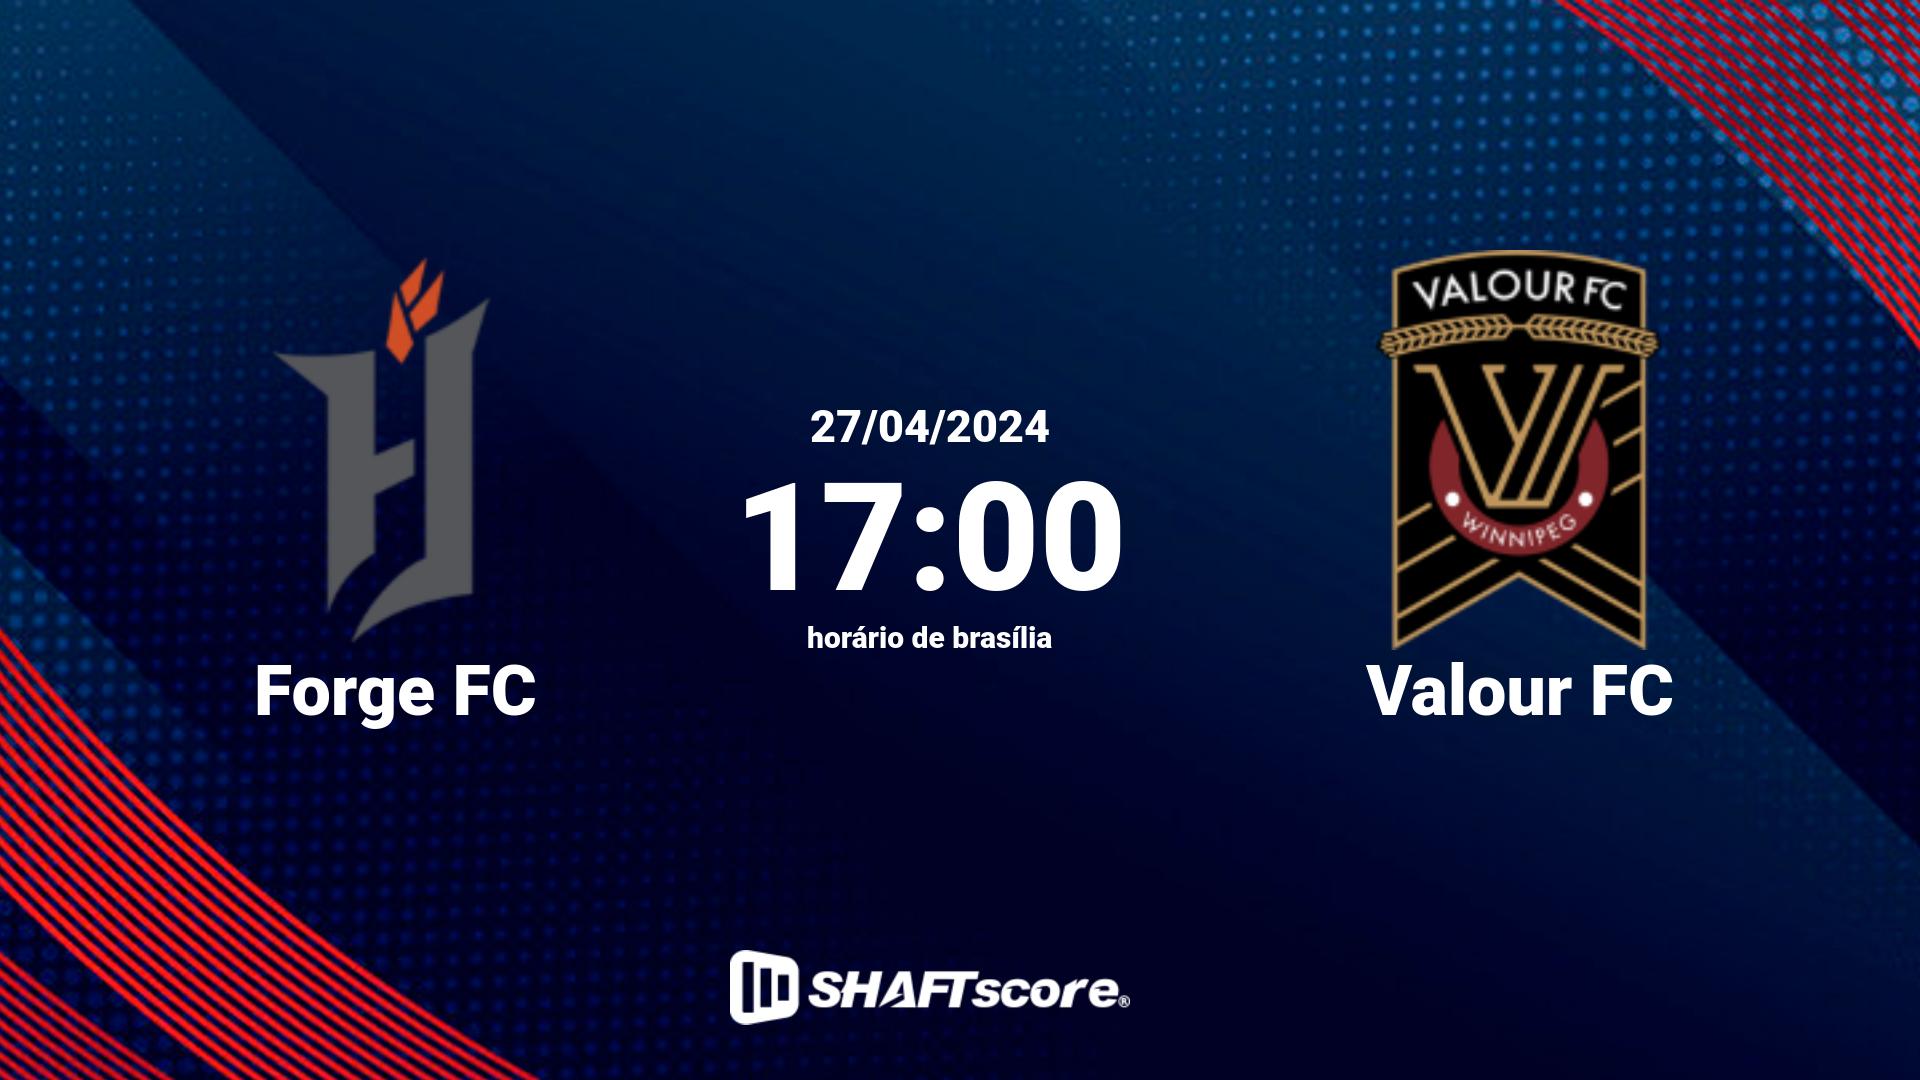 Estatísticas do jogo Forge FC vs Valour FC 27.04 17:00